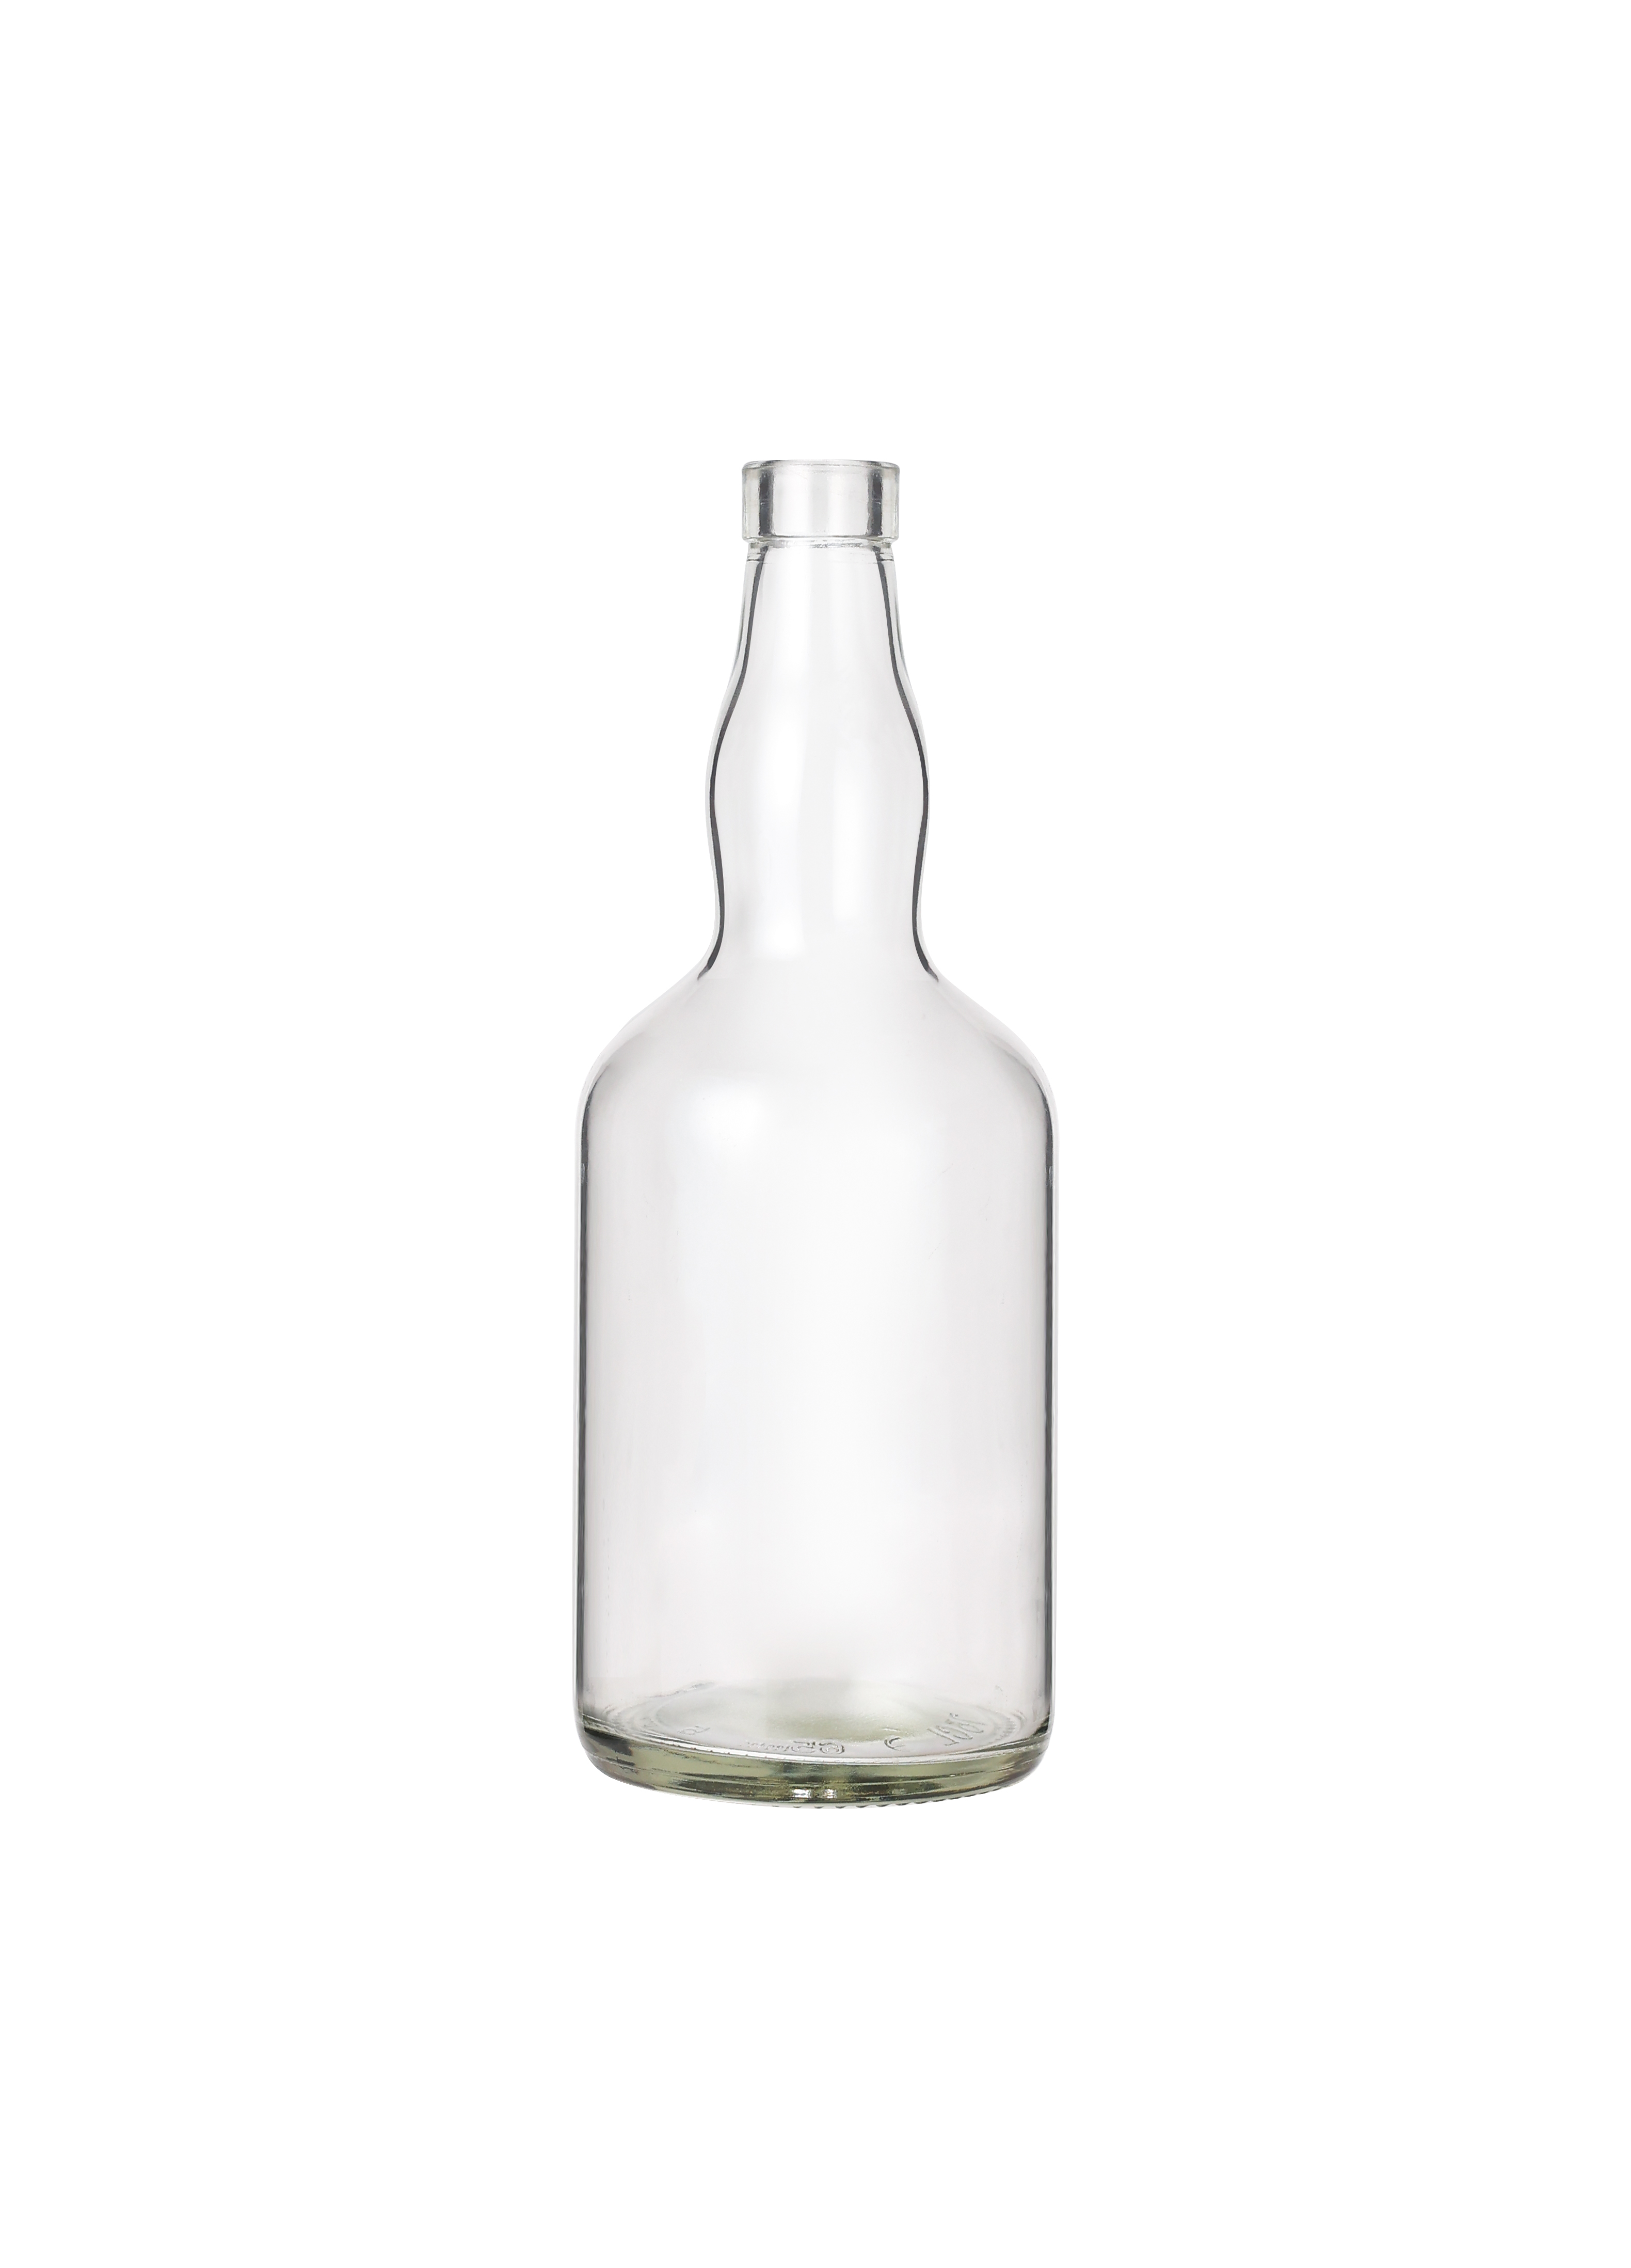 200ml 500ml 750ml Empty Glass Wine Bottle Vodka Gin Rum Alcohol Whiskey Glass Liquor Bottle